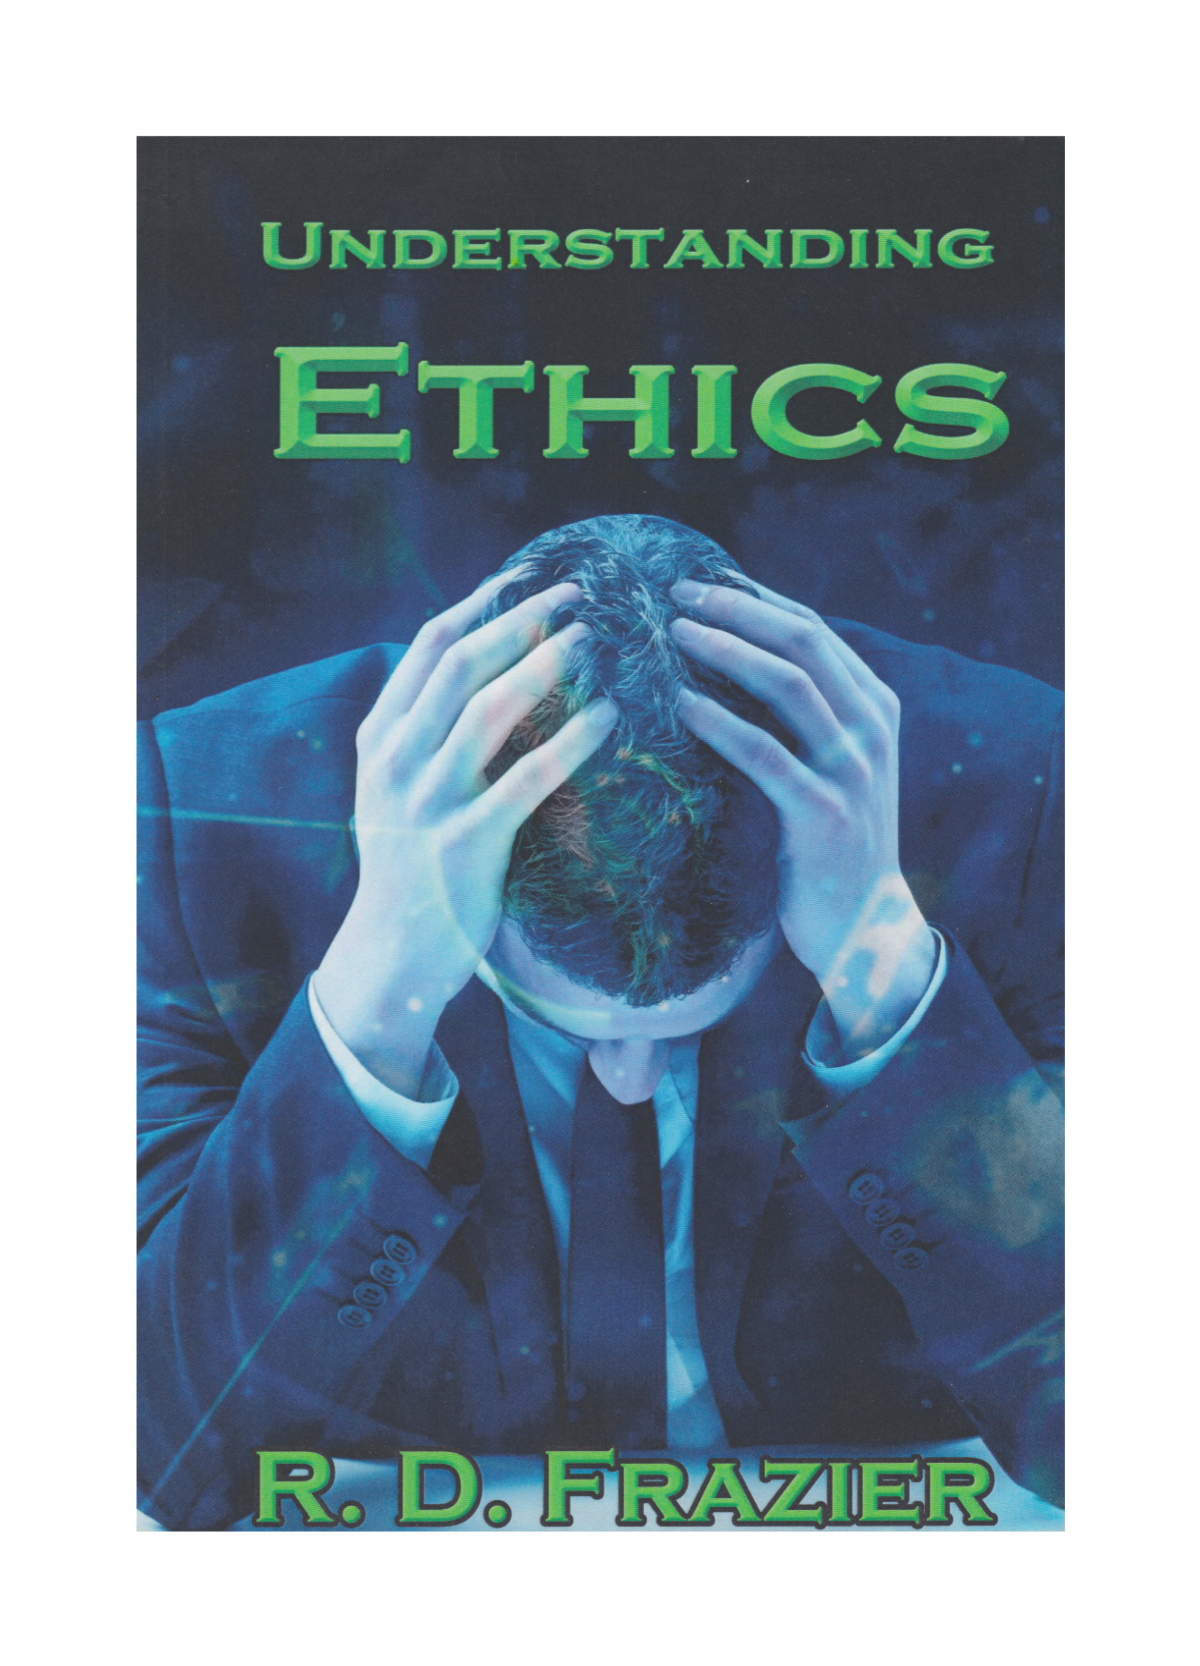 ethics - f.png